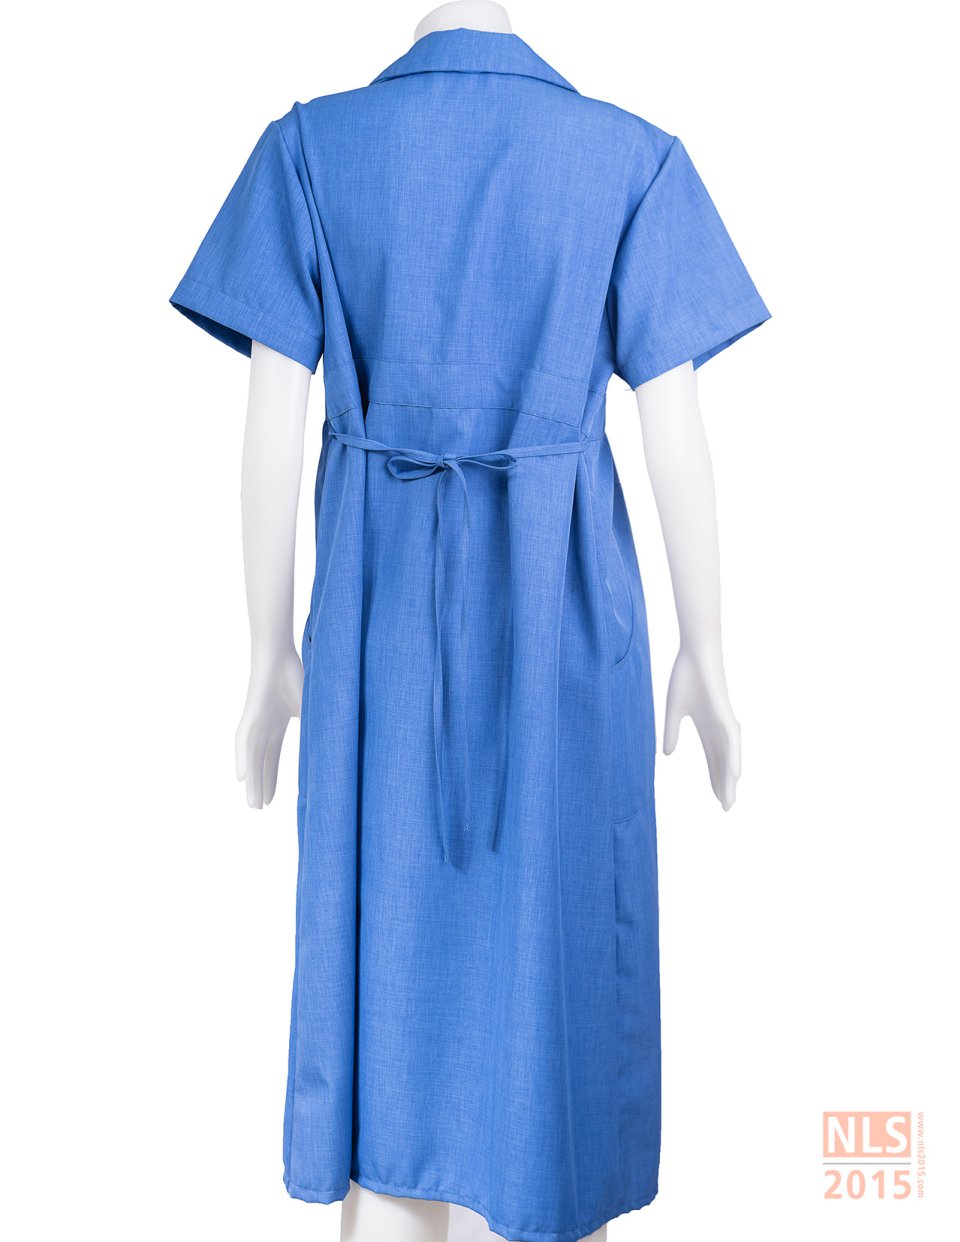 ตัวอย่างชุดคลุมท้องพนักงานสีฟ้าโรงงาน DRAXLMAIER / นลินสิริ รับตัดชุดคลุมท้องพนักงานรูปที่ 